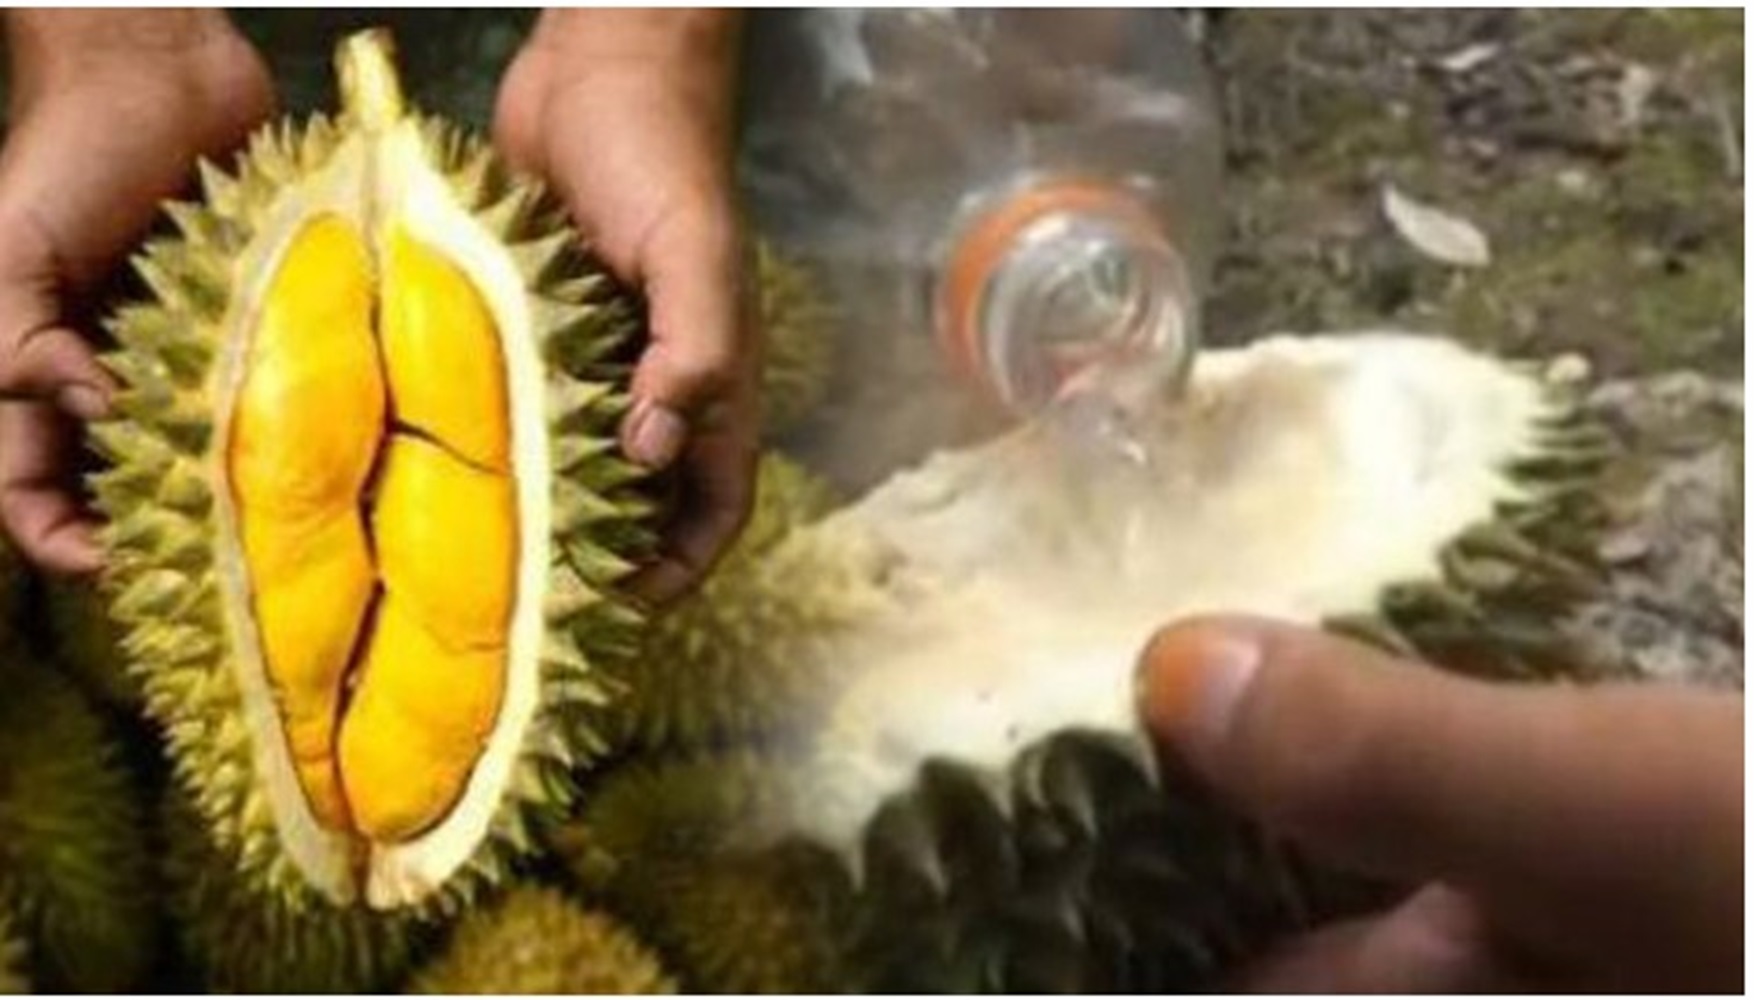 6 Cara Atasi Mabuk Durian, Minum Air Putih Ditambahkan Garam, Minum dari Kulit Buah Durian